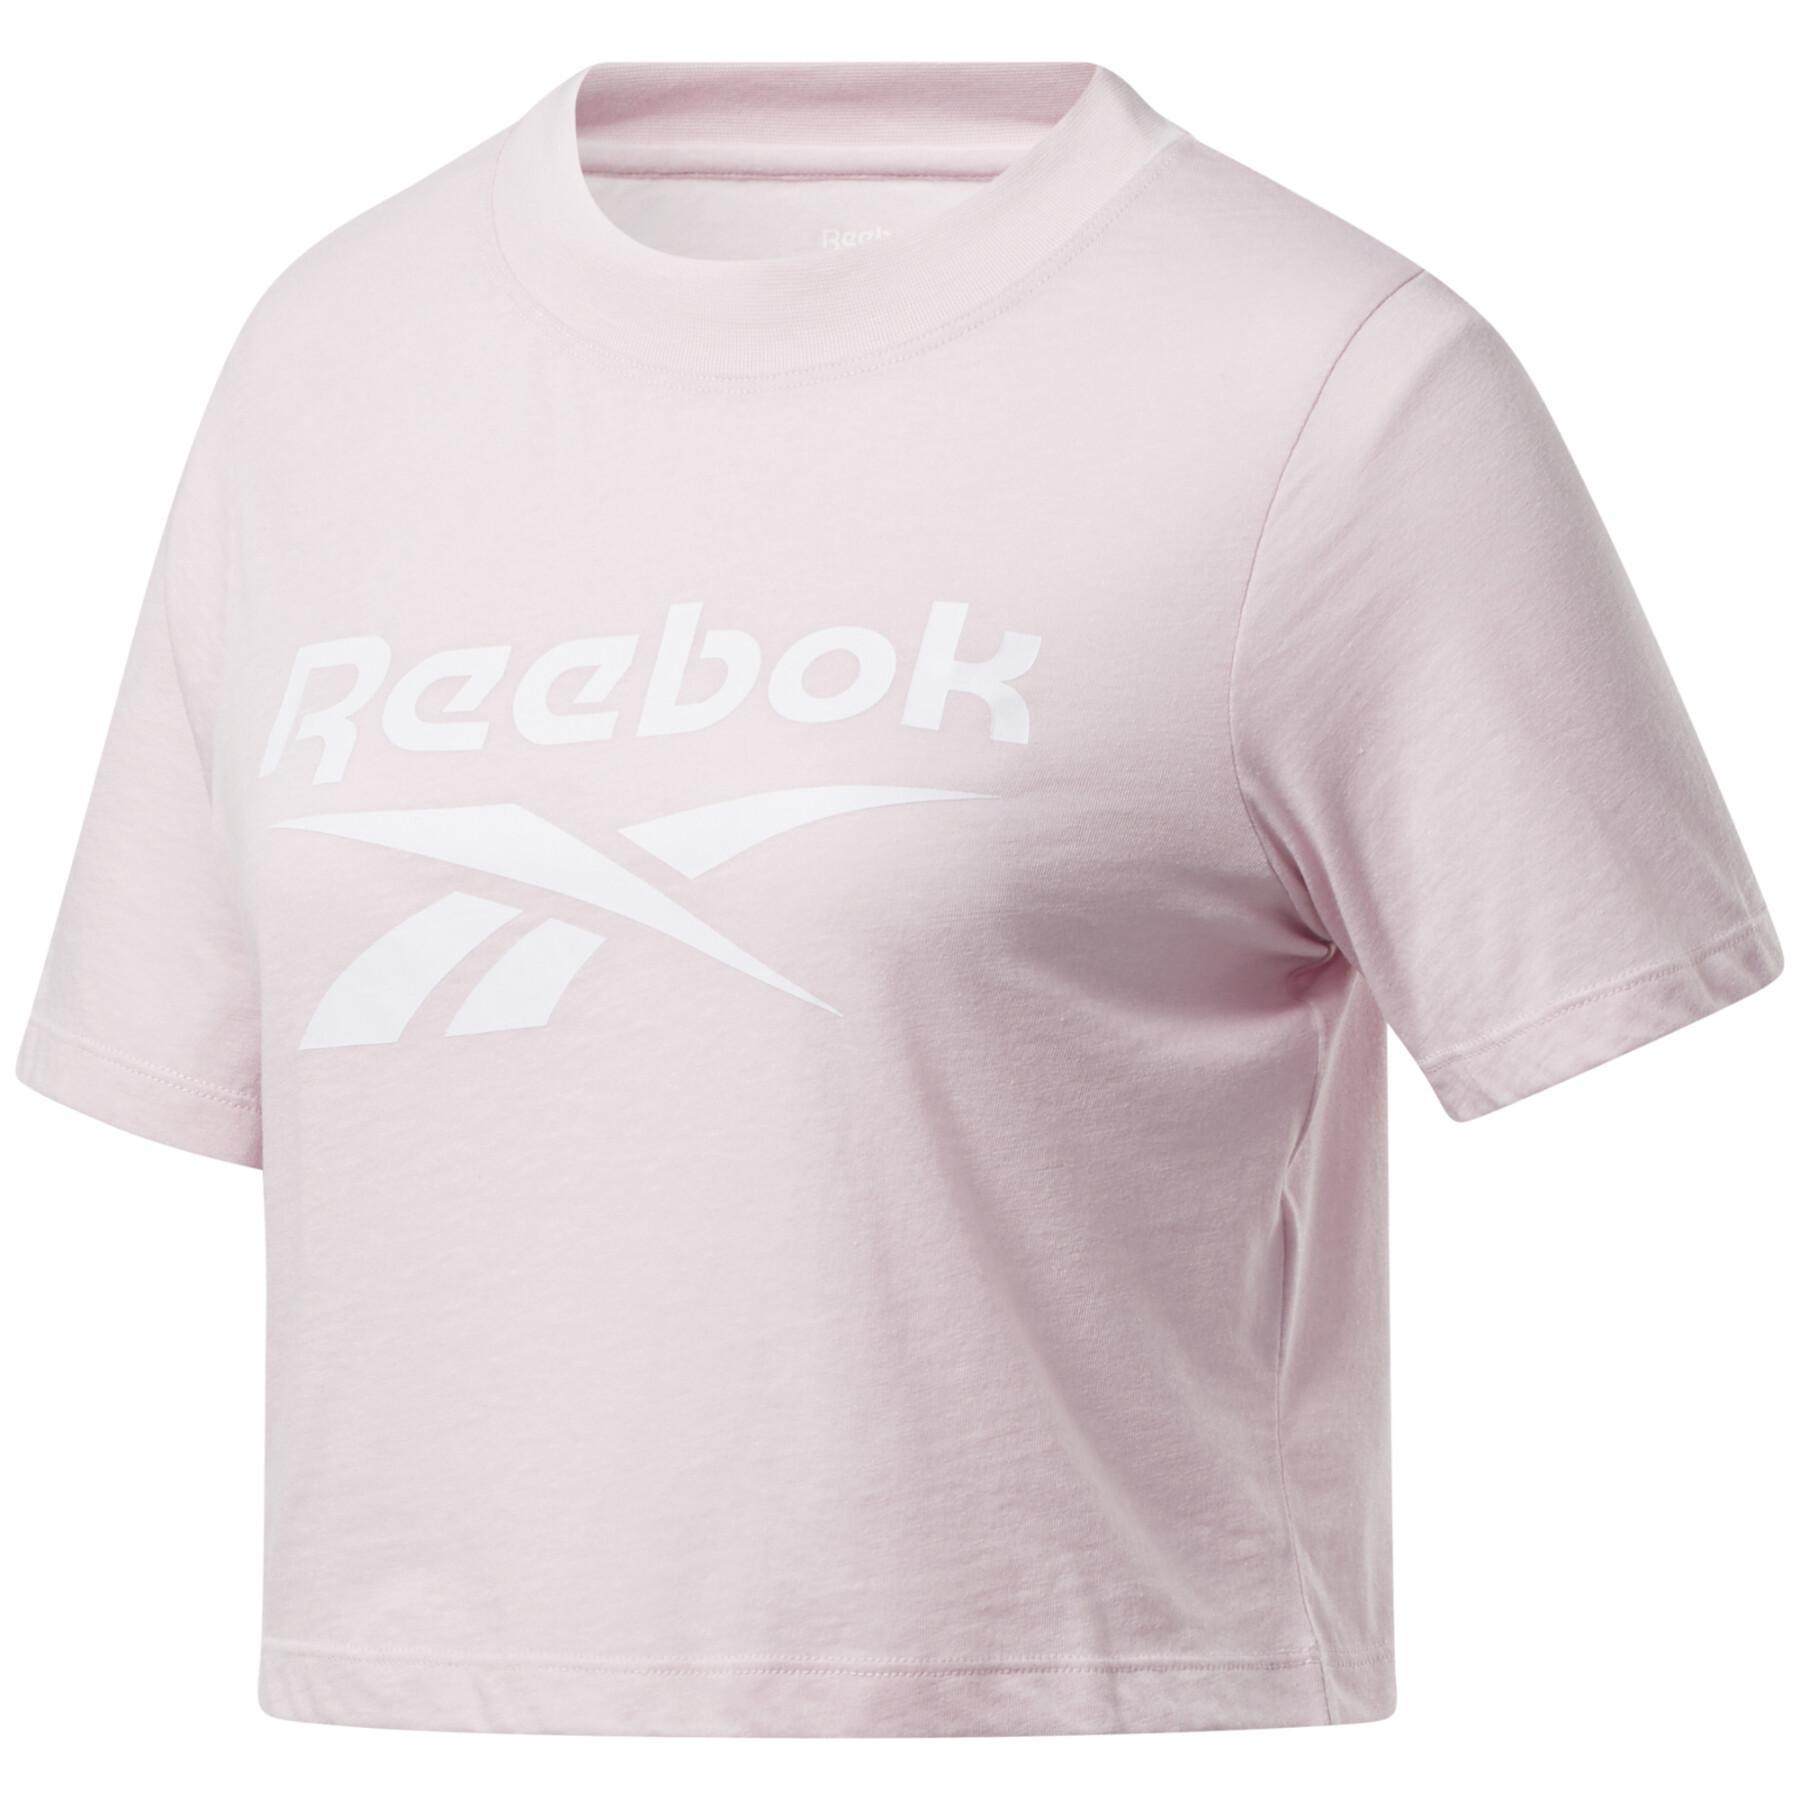 Women's T-shirt Reebok crop Identity